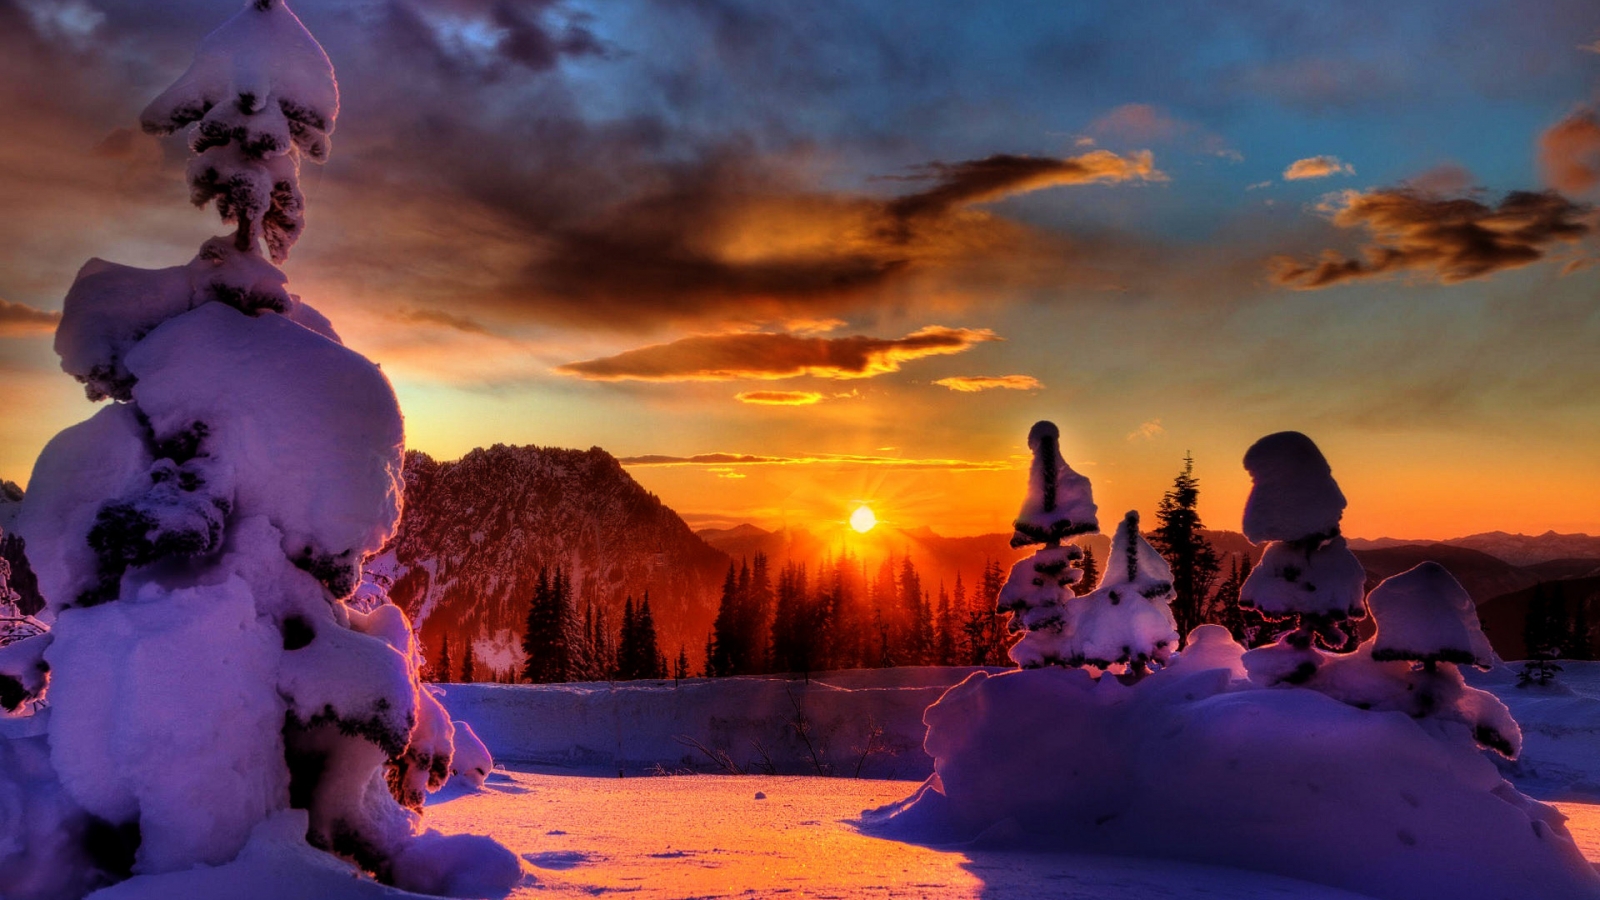 Winter Sunset for 1600 x 900 HDTV resolution